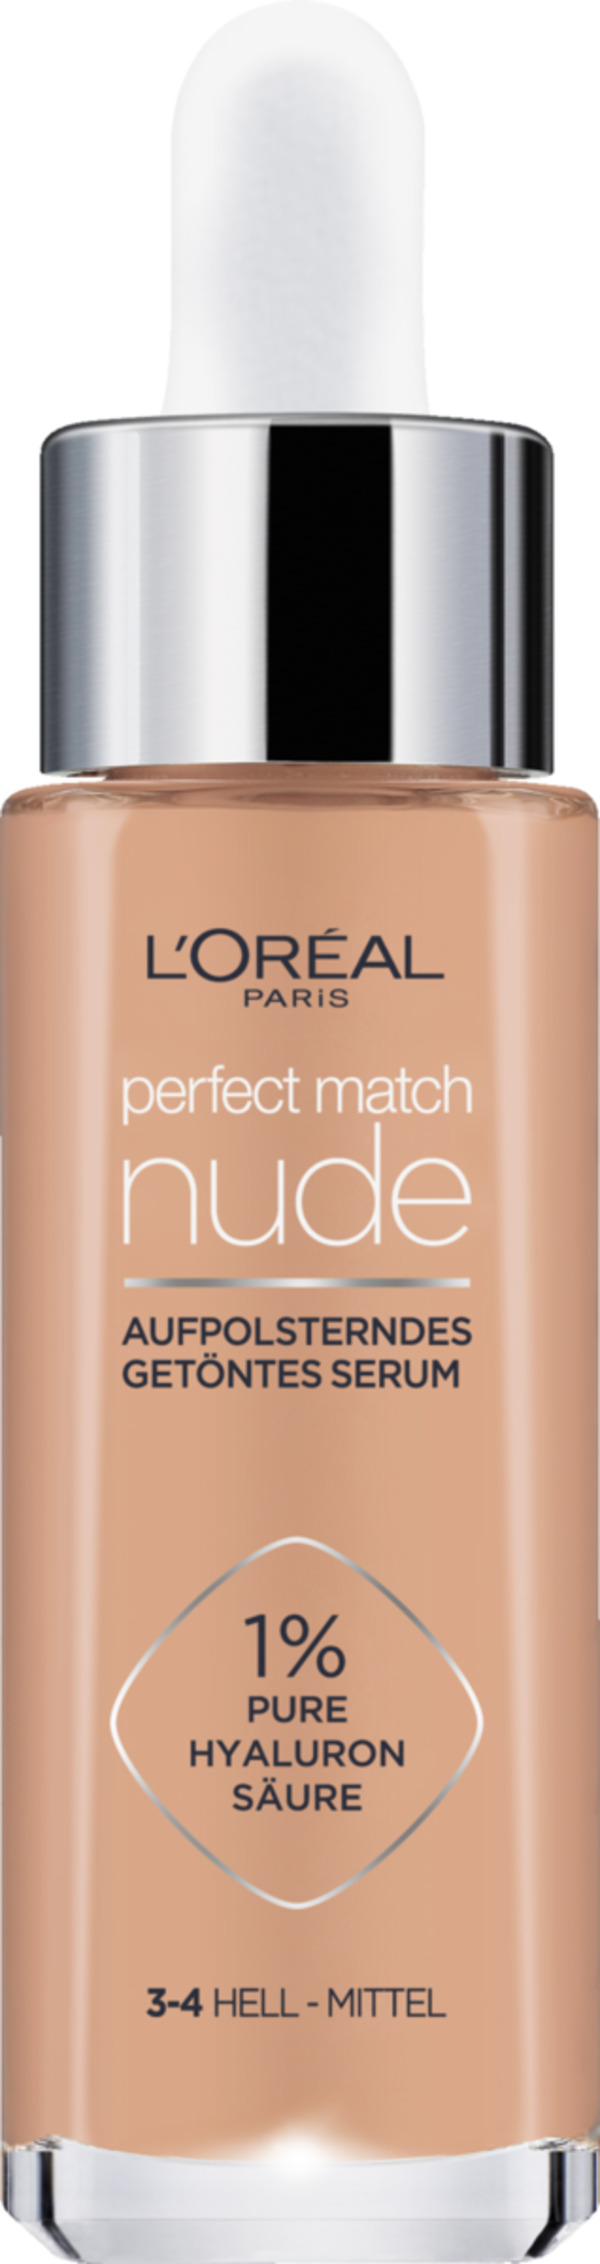 Bild 1 von L’Oréal Paris Perfect Match Aufpolsterndes Getöntes Serum 3-4 hell - mittel